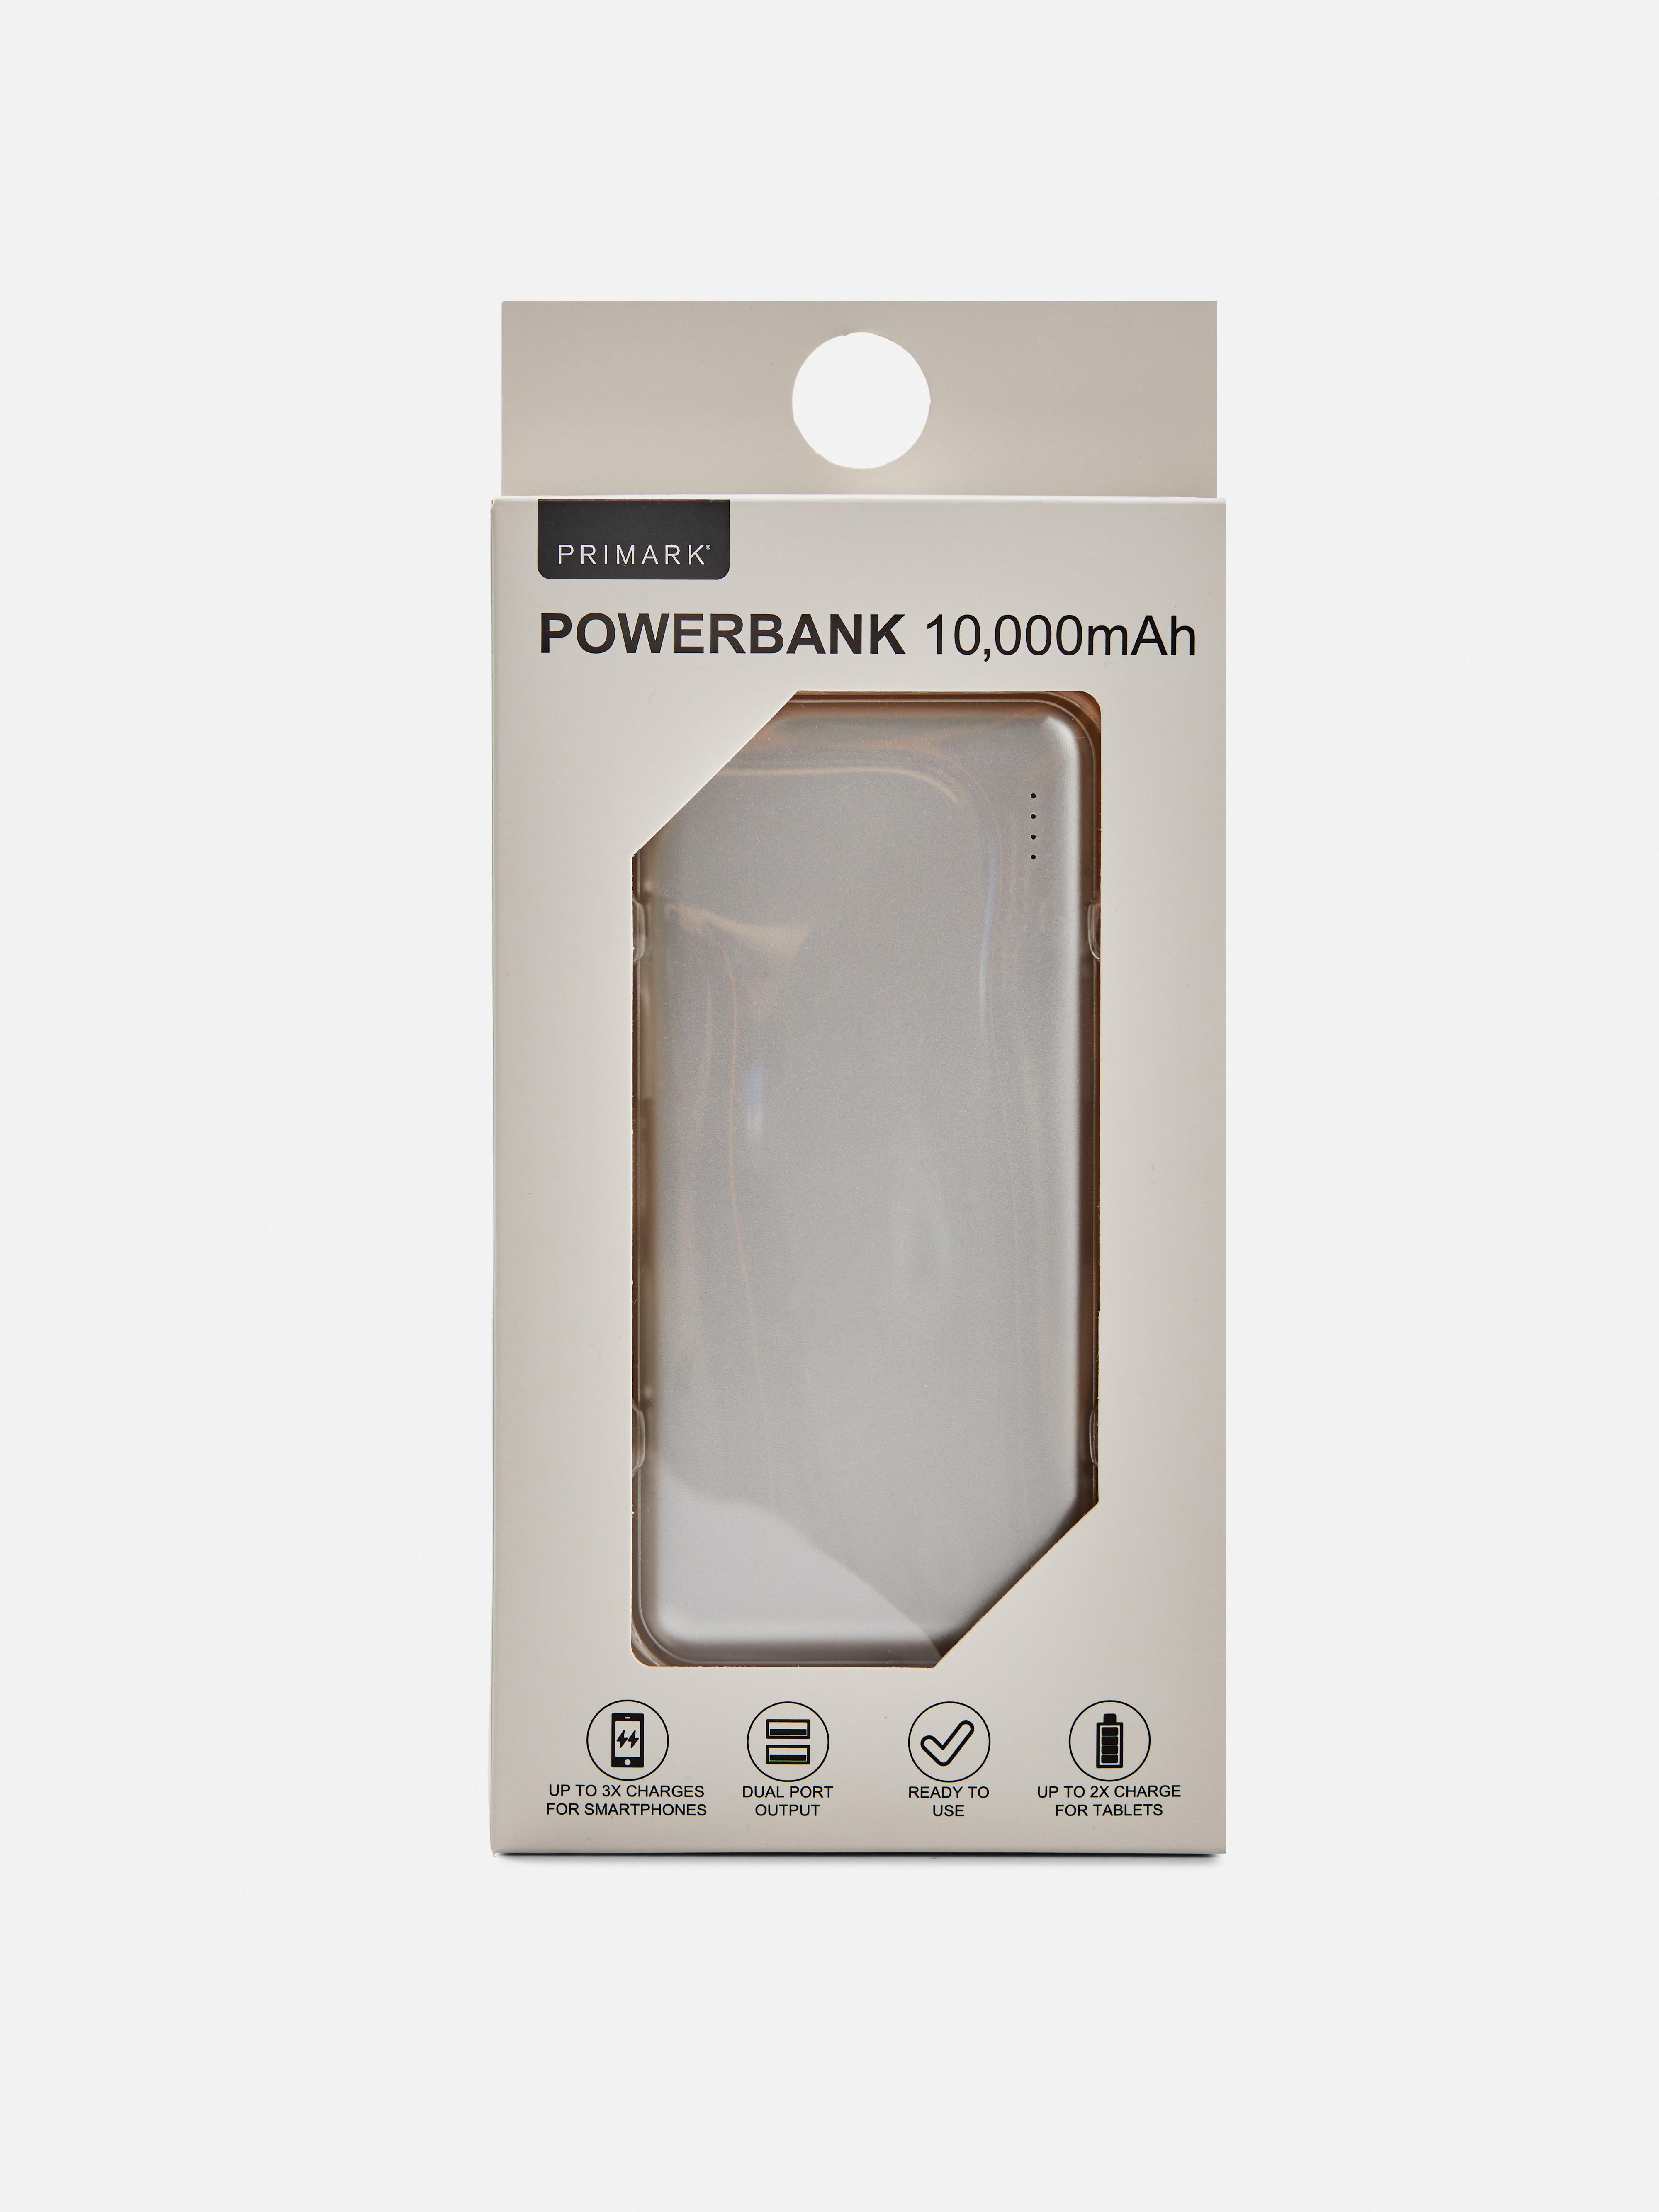 Powerbank 10,000mAh